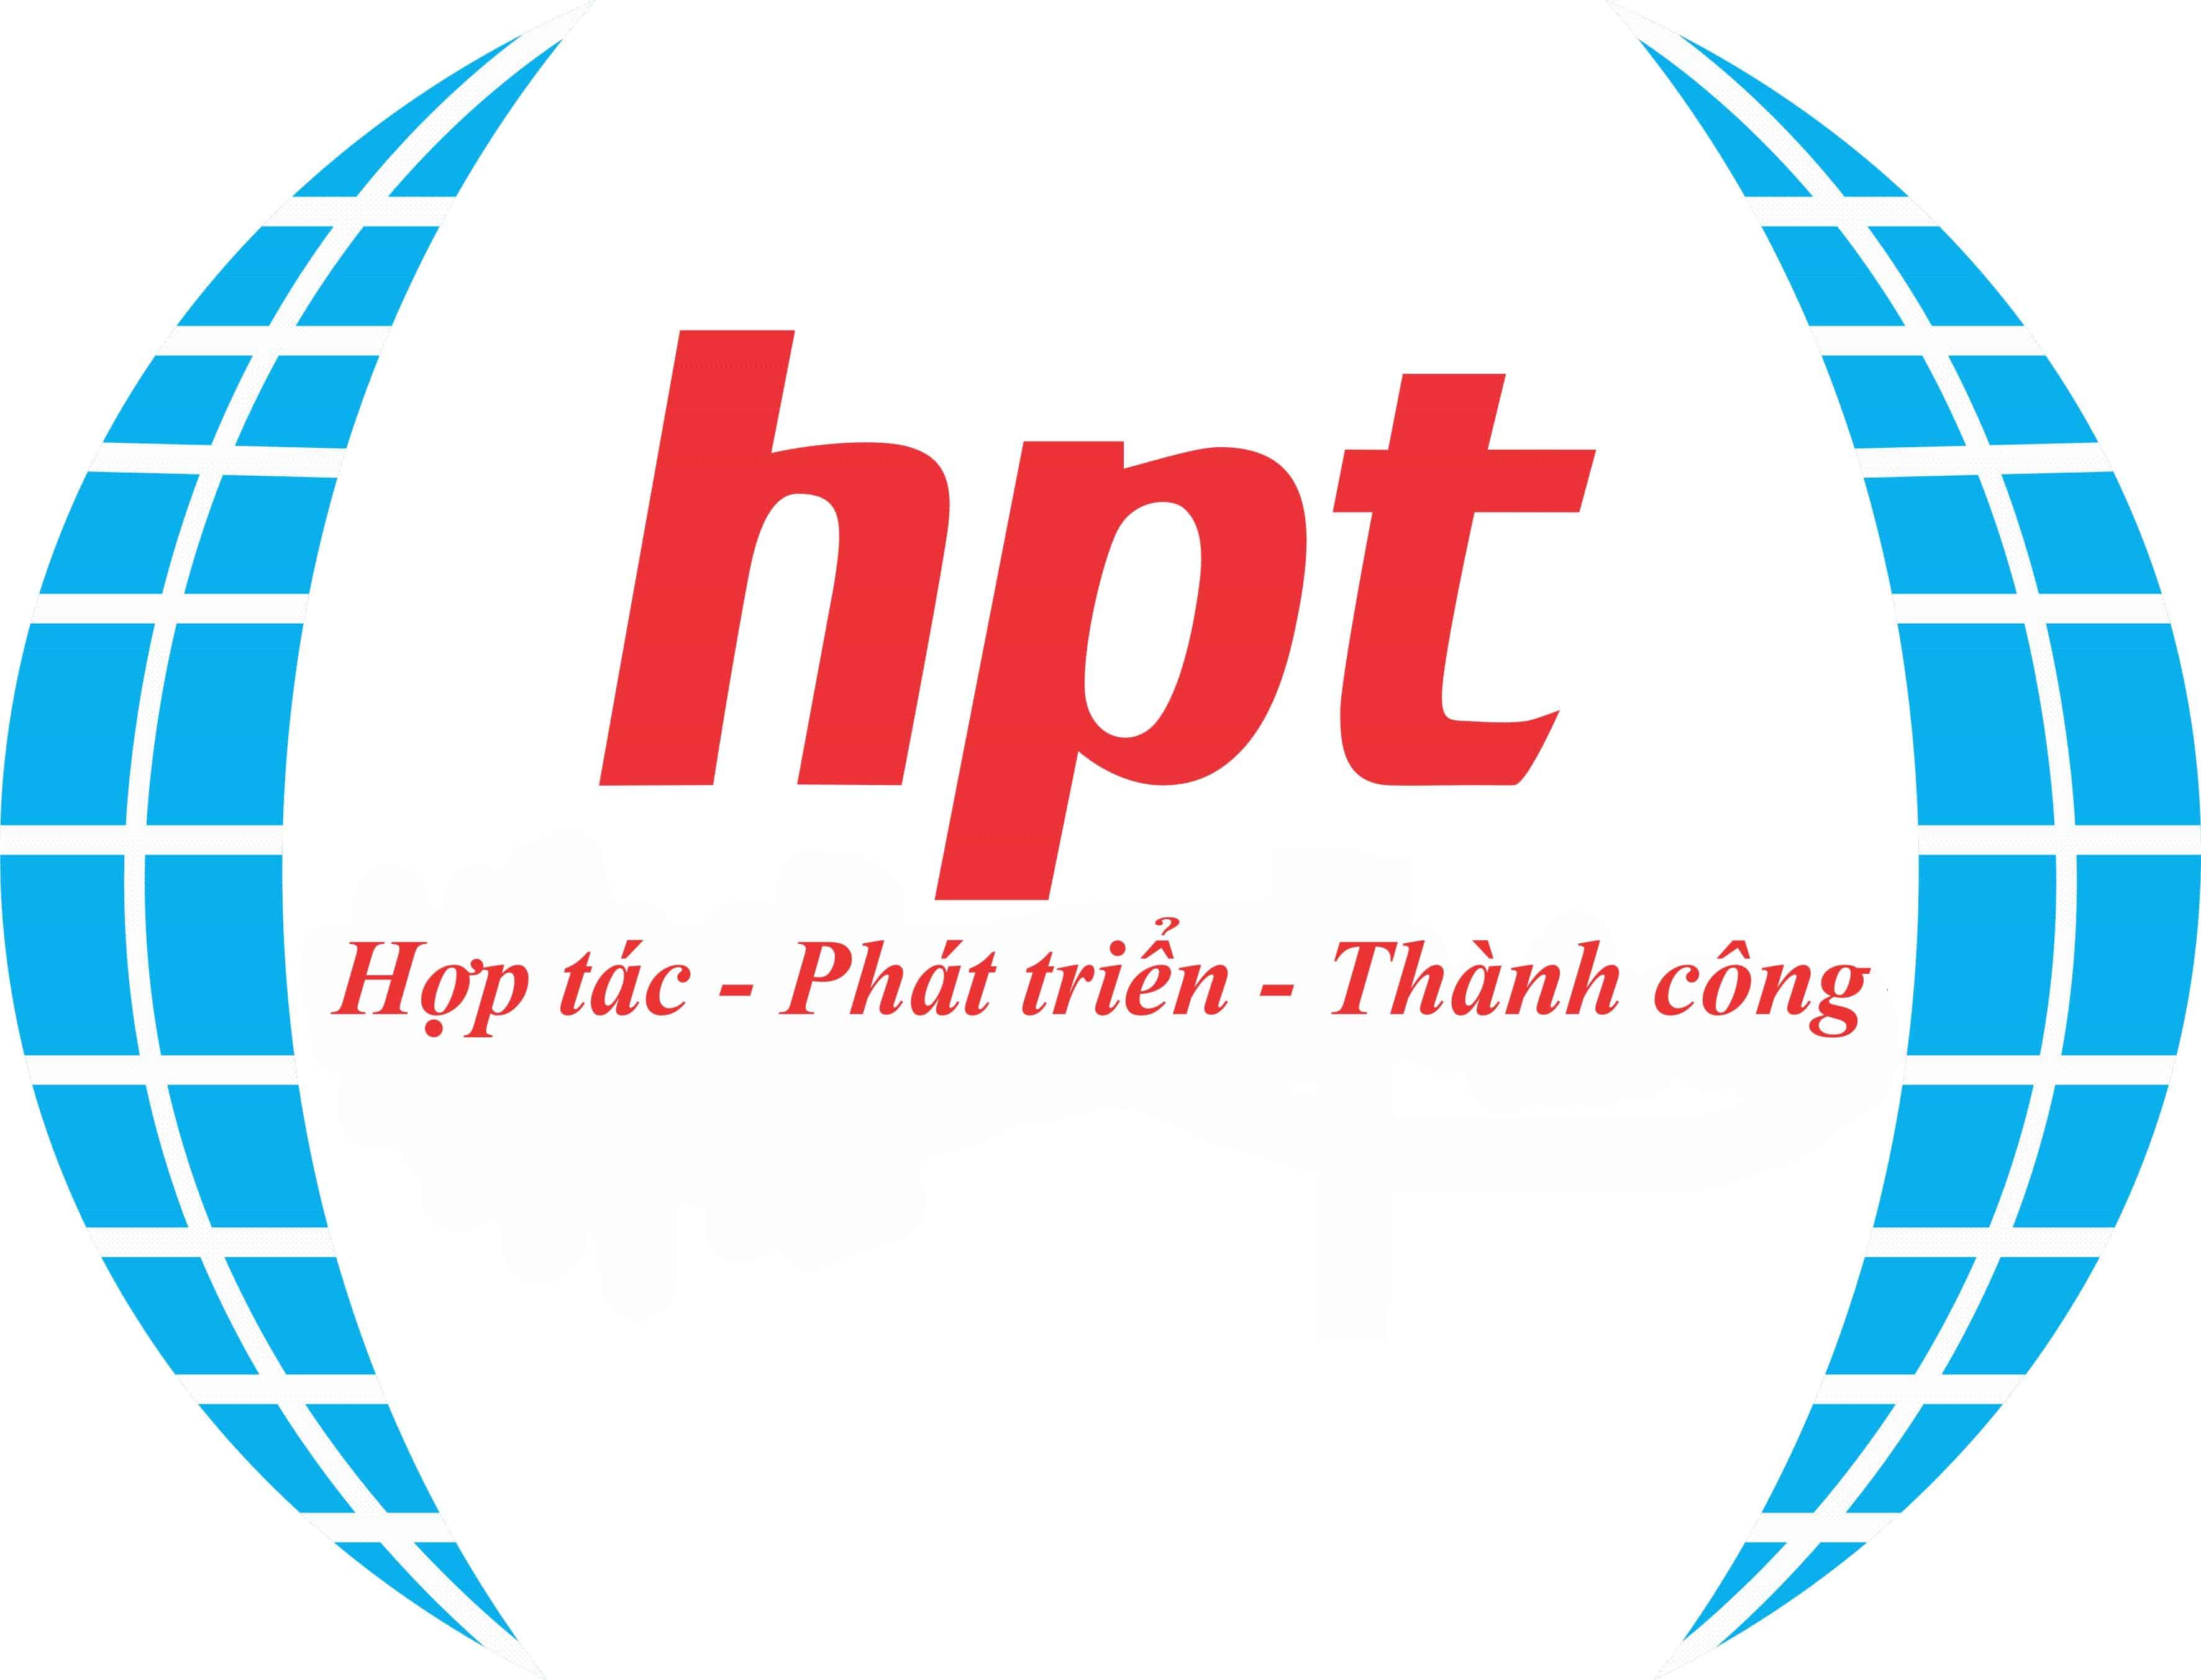 man-hinh-tuong-tac-thong-minh-viewsonic-ifp7560